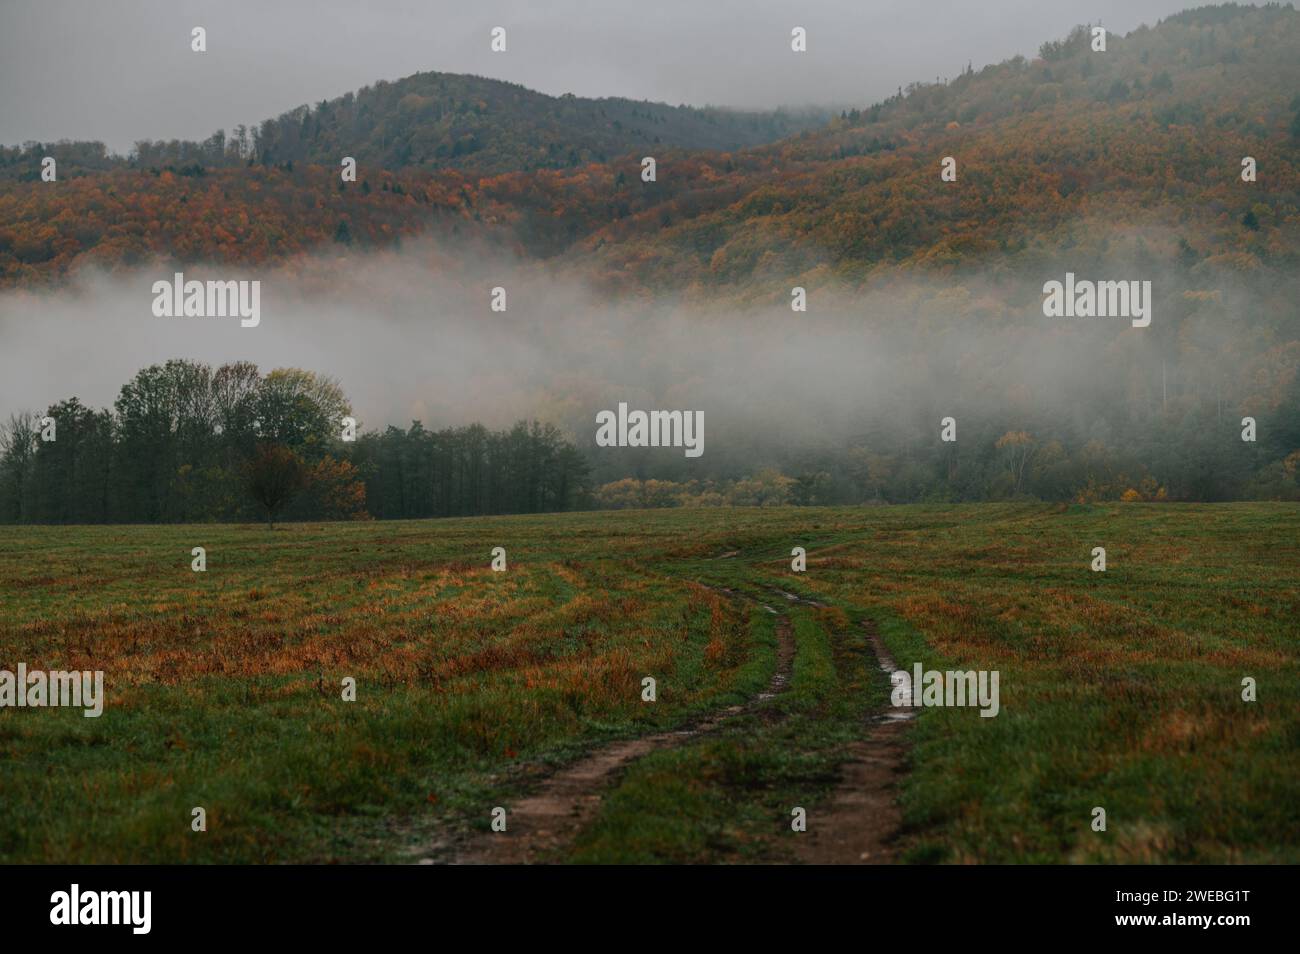 Eleganza piangente: La bellezza pensiva di una mattinata d'autunno avvolta dalla nebbia Foto Stock